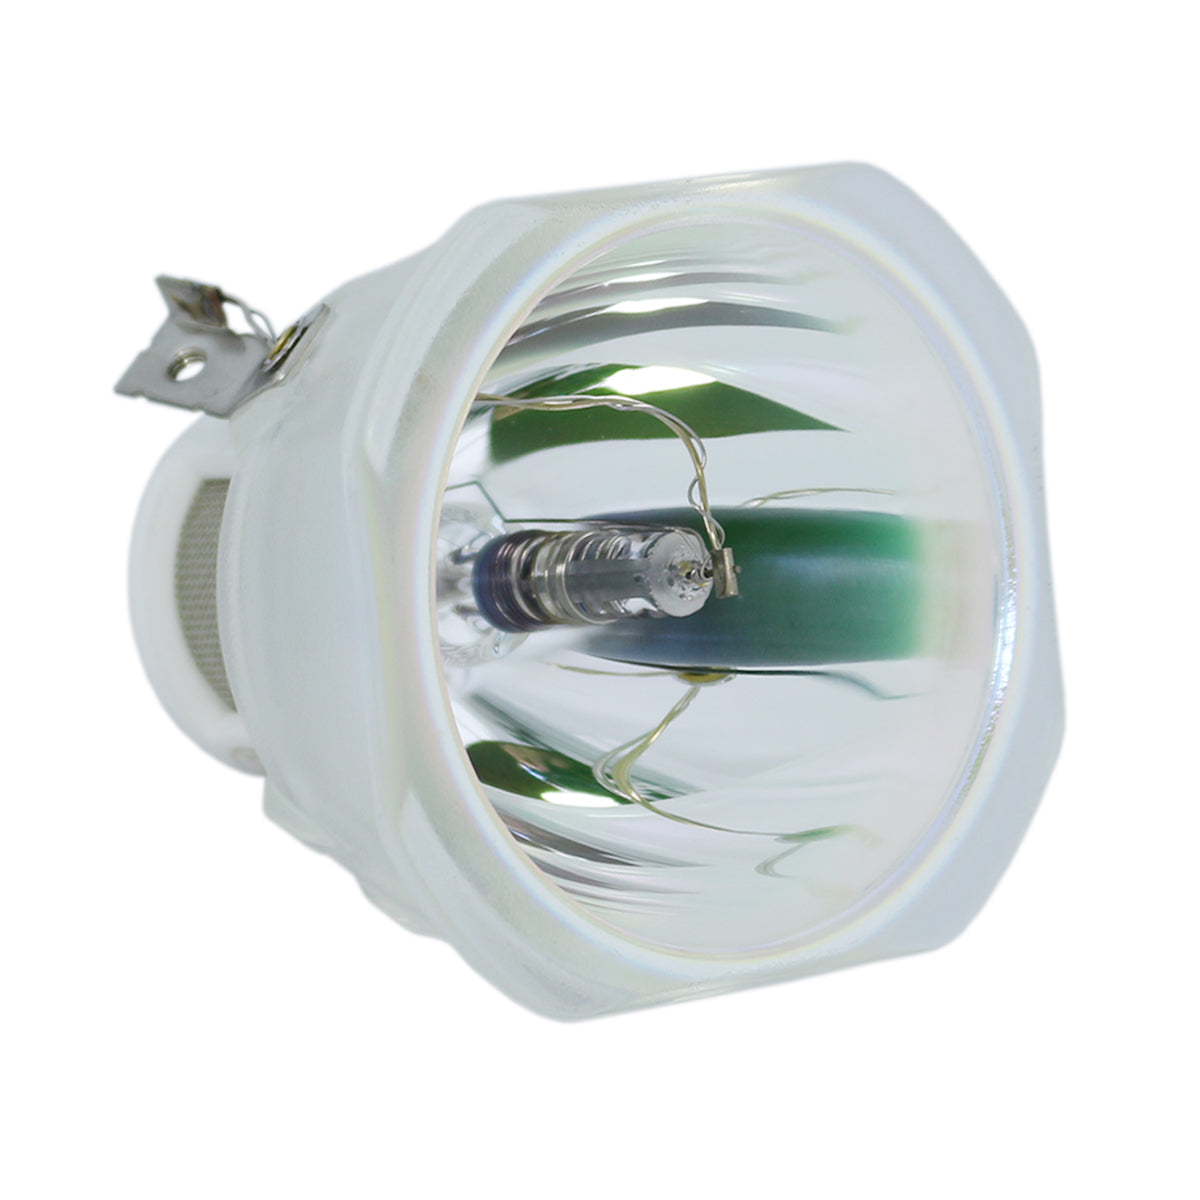 Saville TS2000 Ushio Projector Bare Lamp